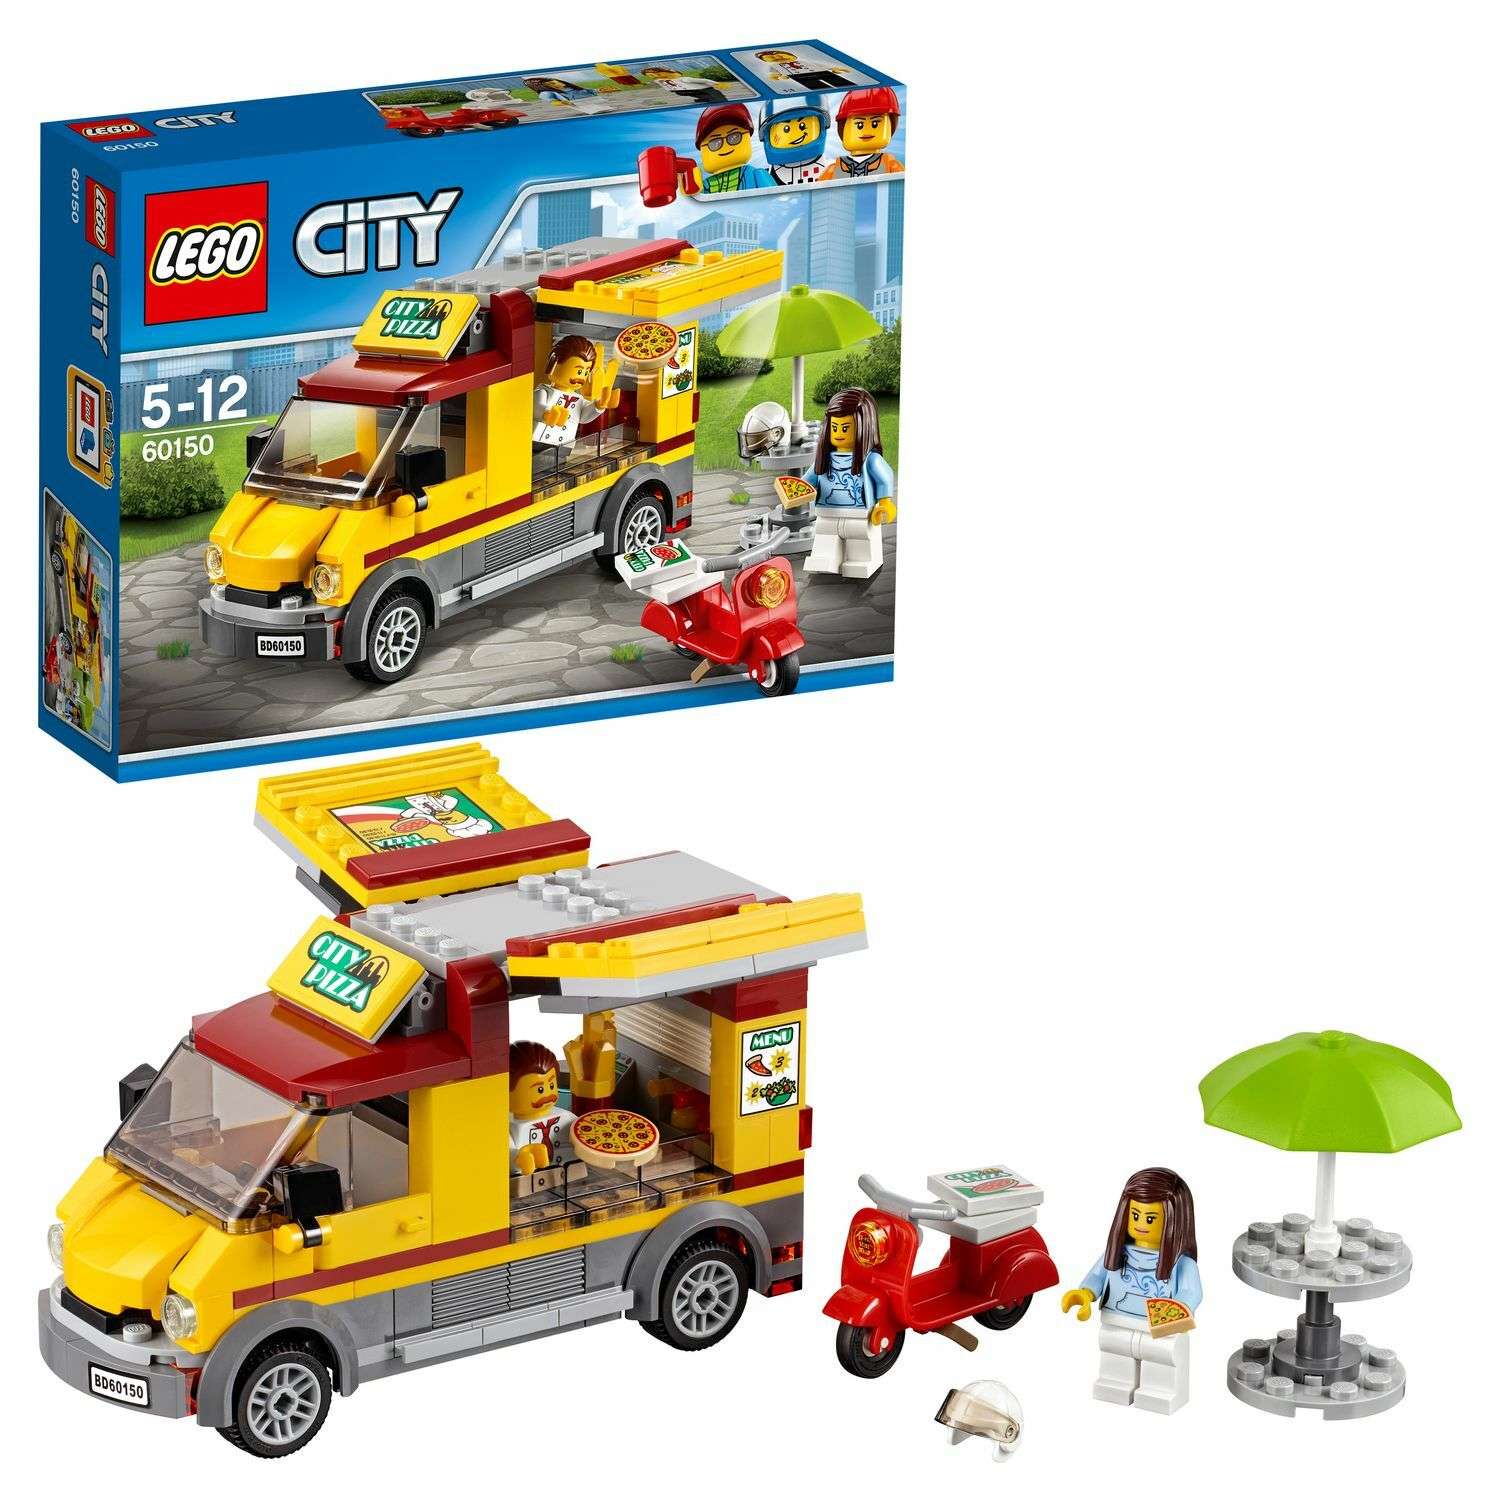 Конструктор LEGO City Great Vehicles Фургон-пиццерия (60150) - фото 1